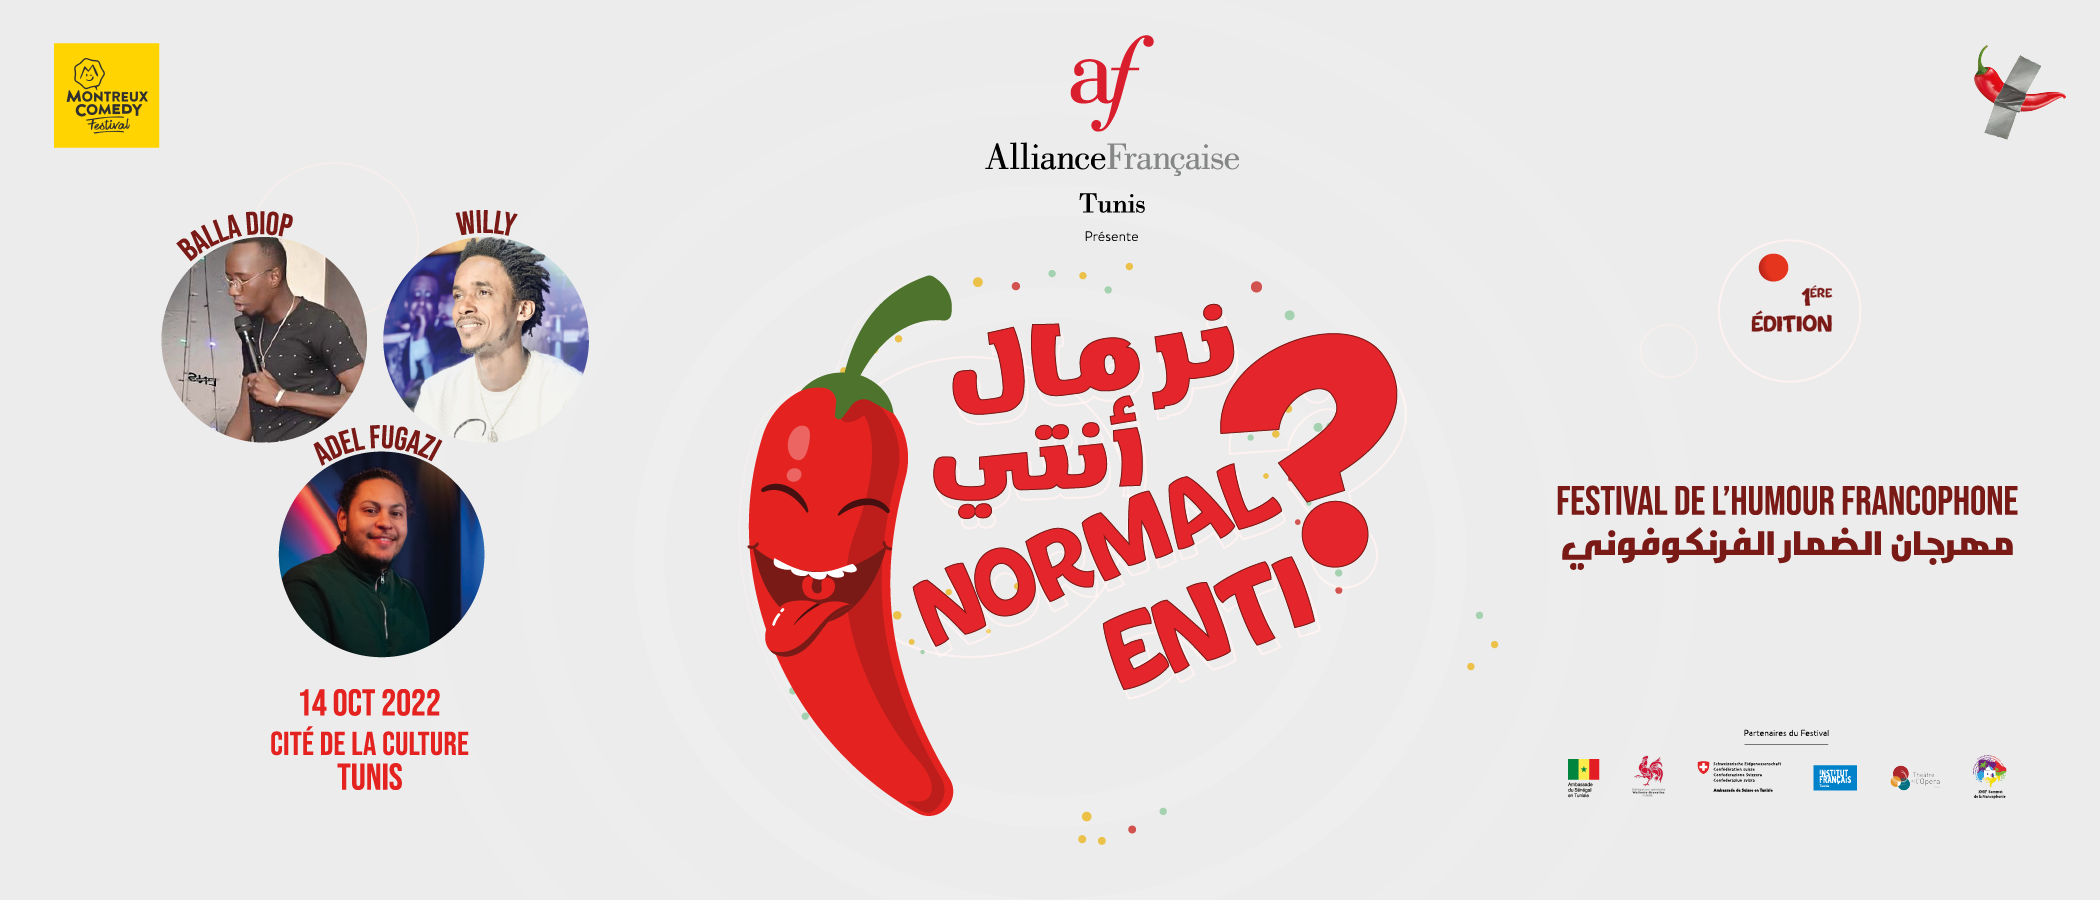 “Normal Enti ?” 
Adel Fugazi, Balla Diop et Willy